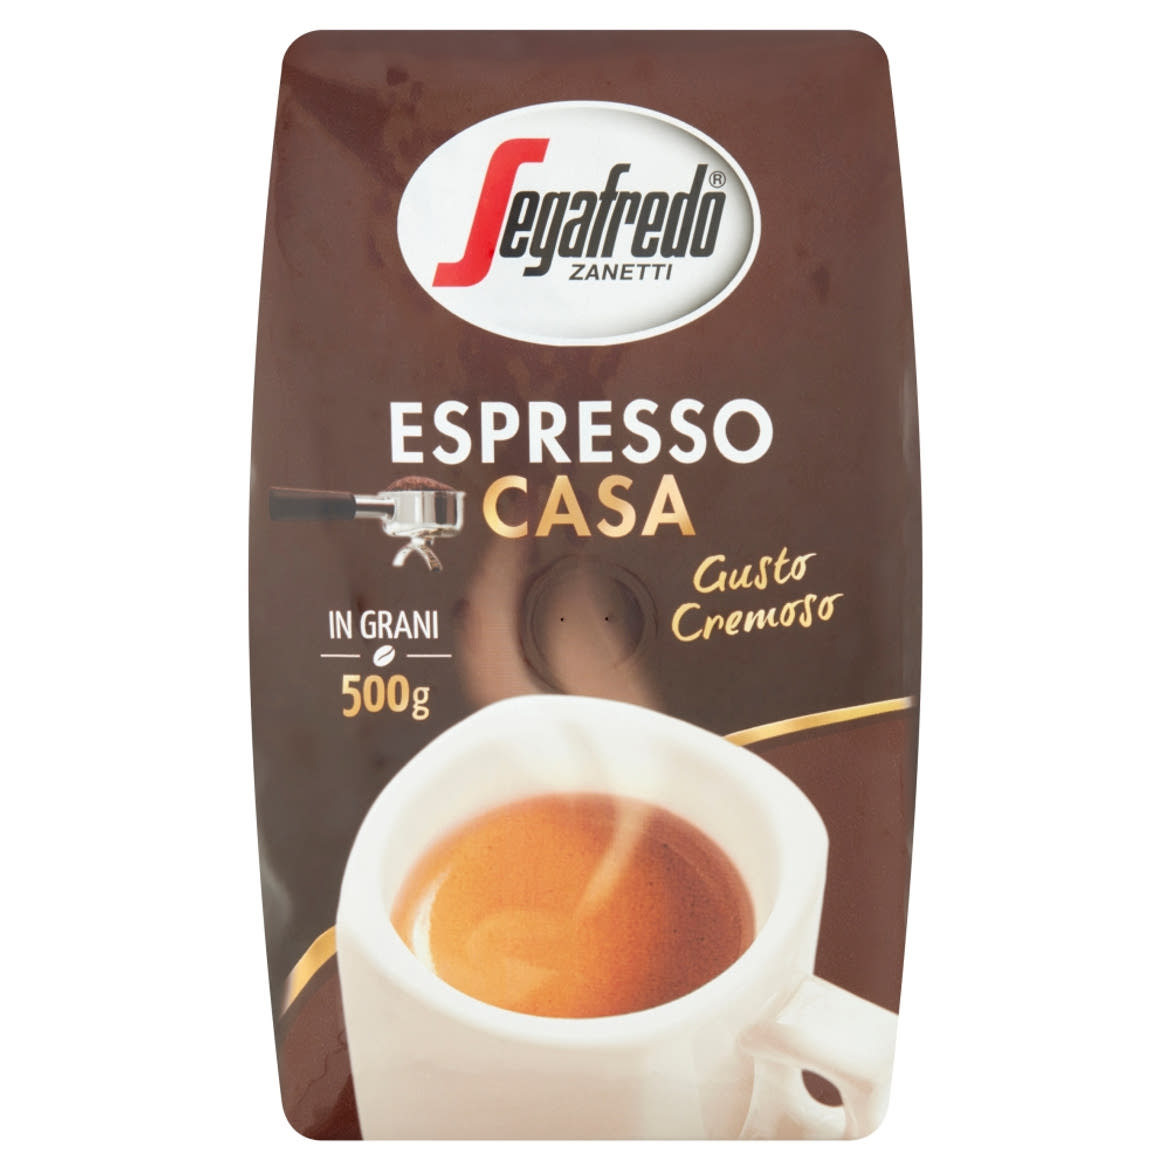 Segafredo Zanetti Espresso Casa szemes pörkölt kávé